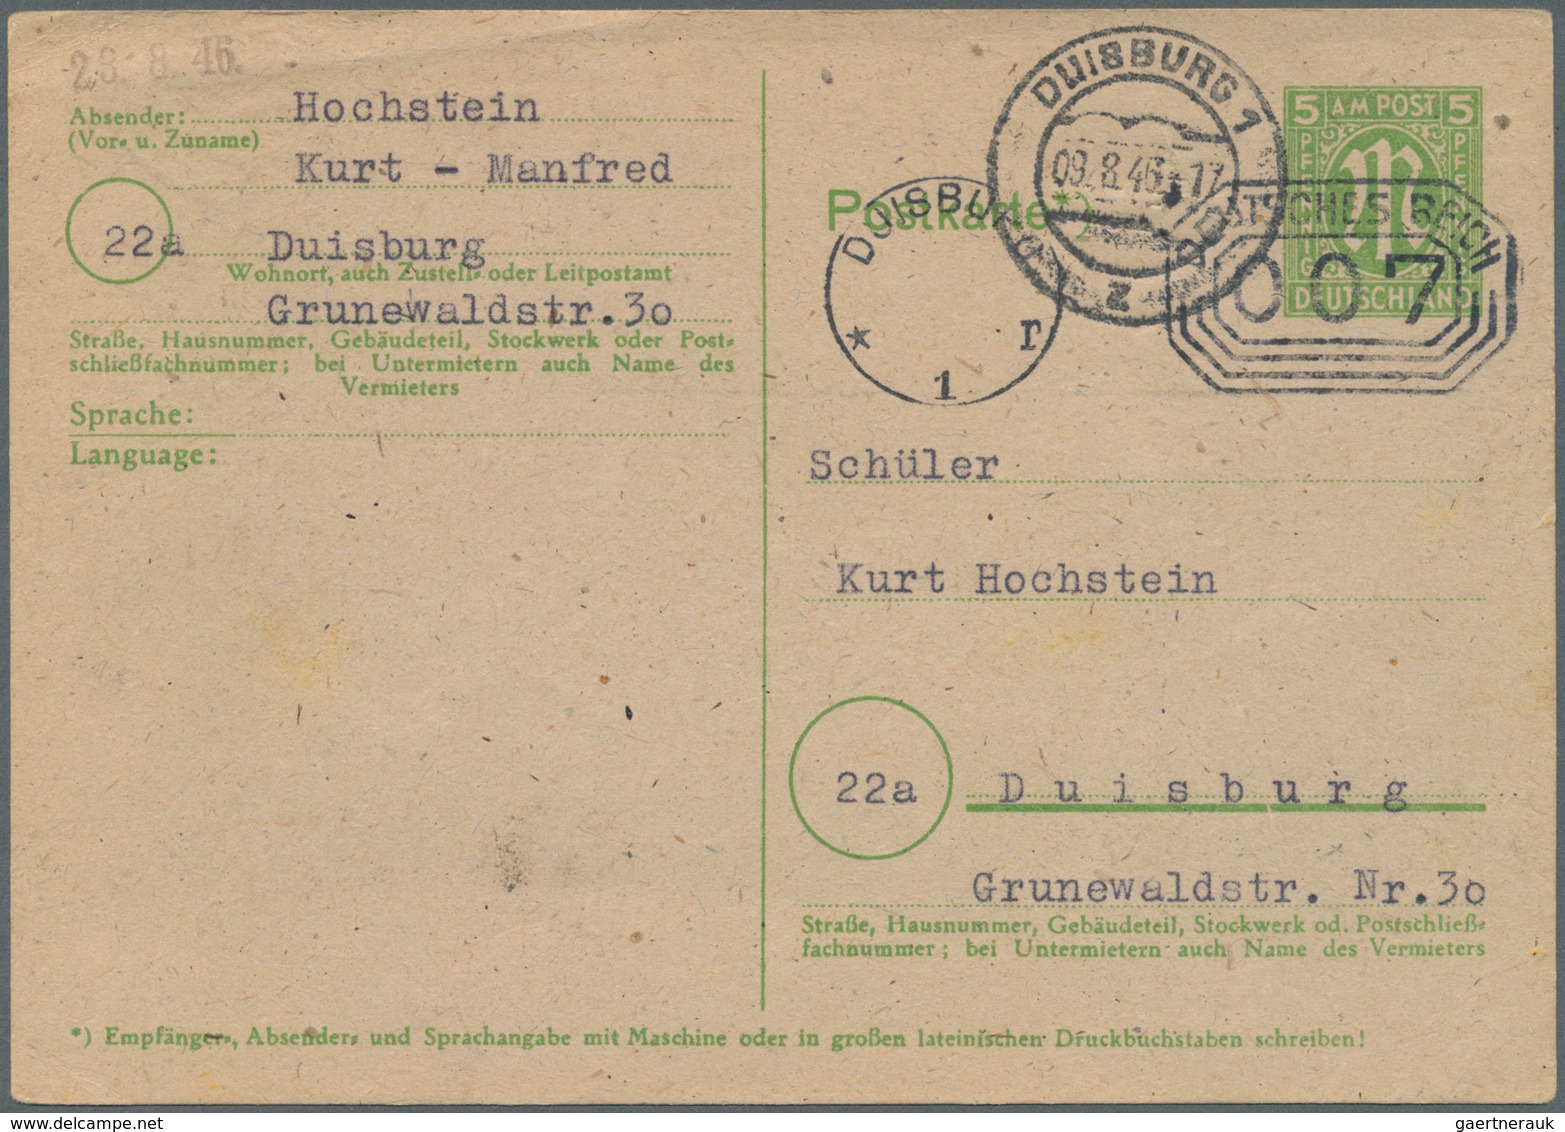 32410 Bundesrepublik und Berlin: 1946/1966, 3 Alben mit hunderten Briefen und einigen Ganzsachen, dabei in